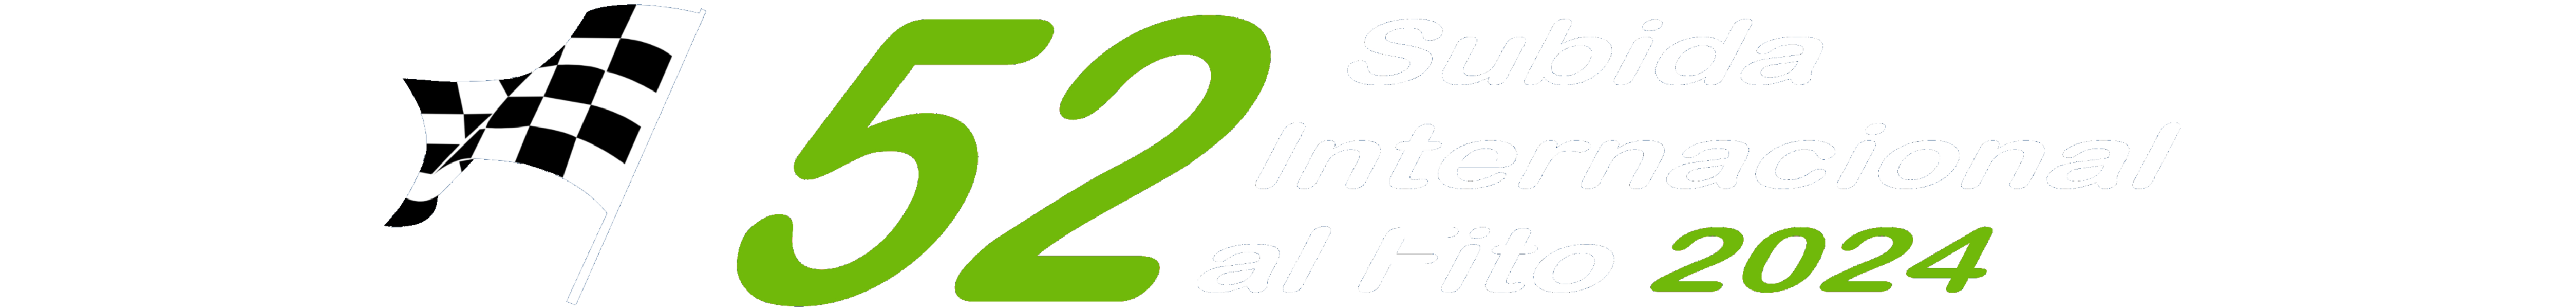 Subida Internacional al Fito | European Hill Climb Championship and Spanish Hill Climb Championship